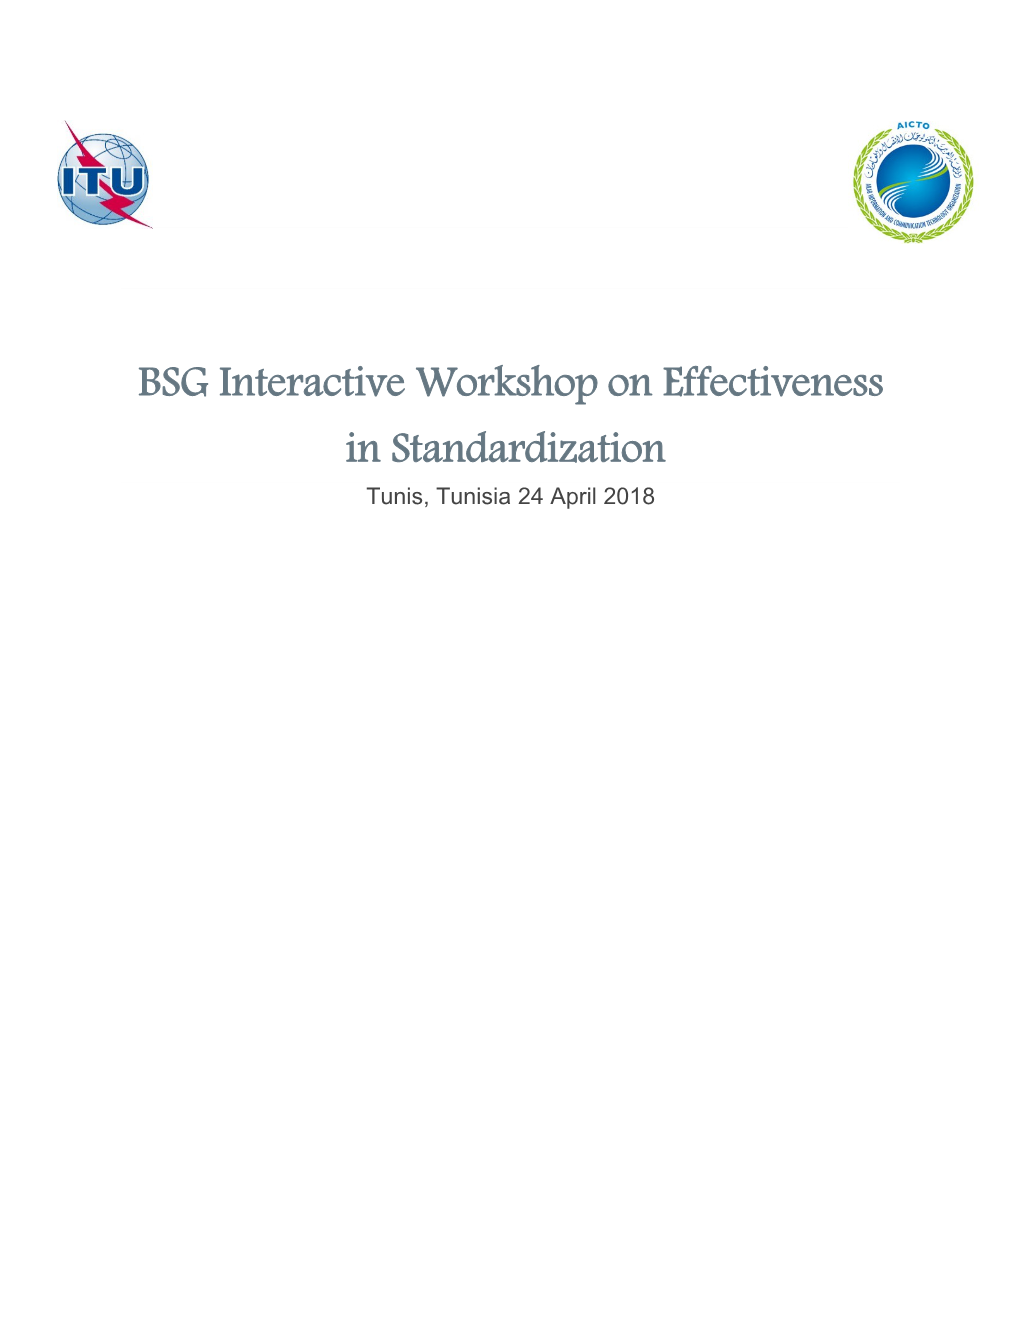 BSG Interactive Workshop on Effectiveness in Standardization